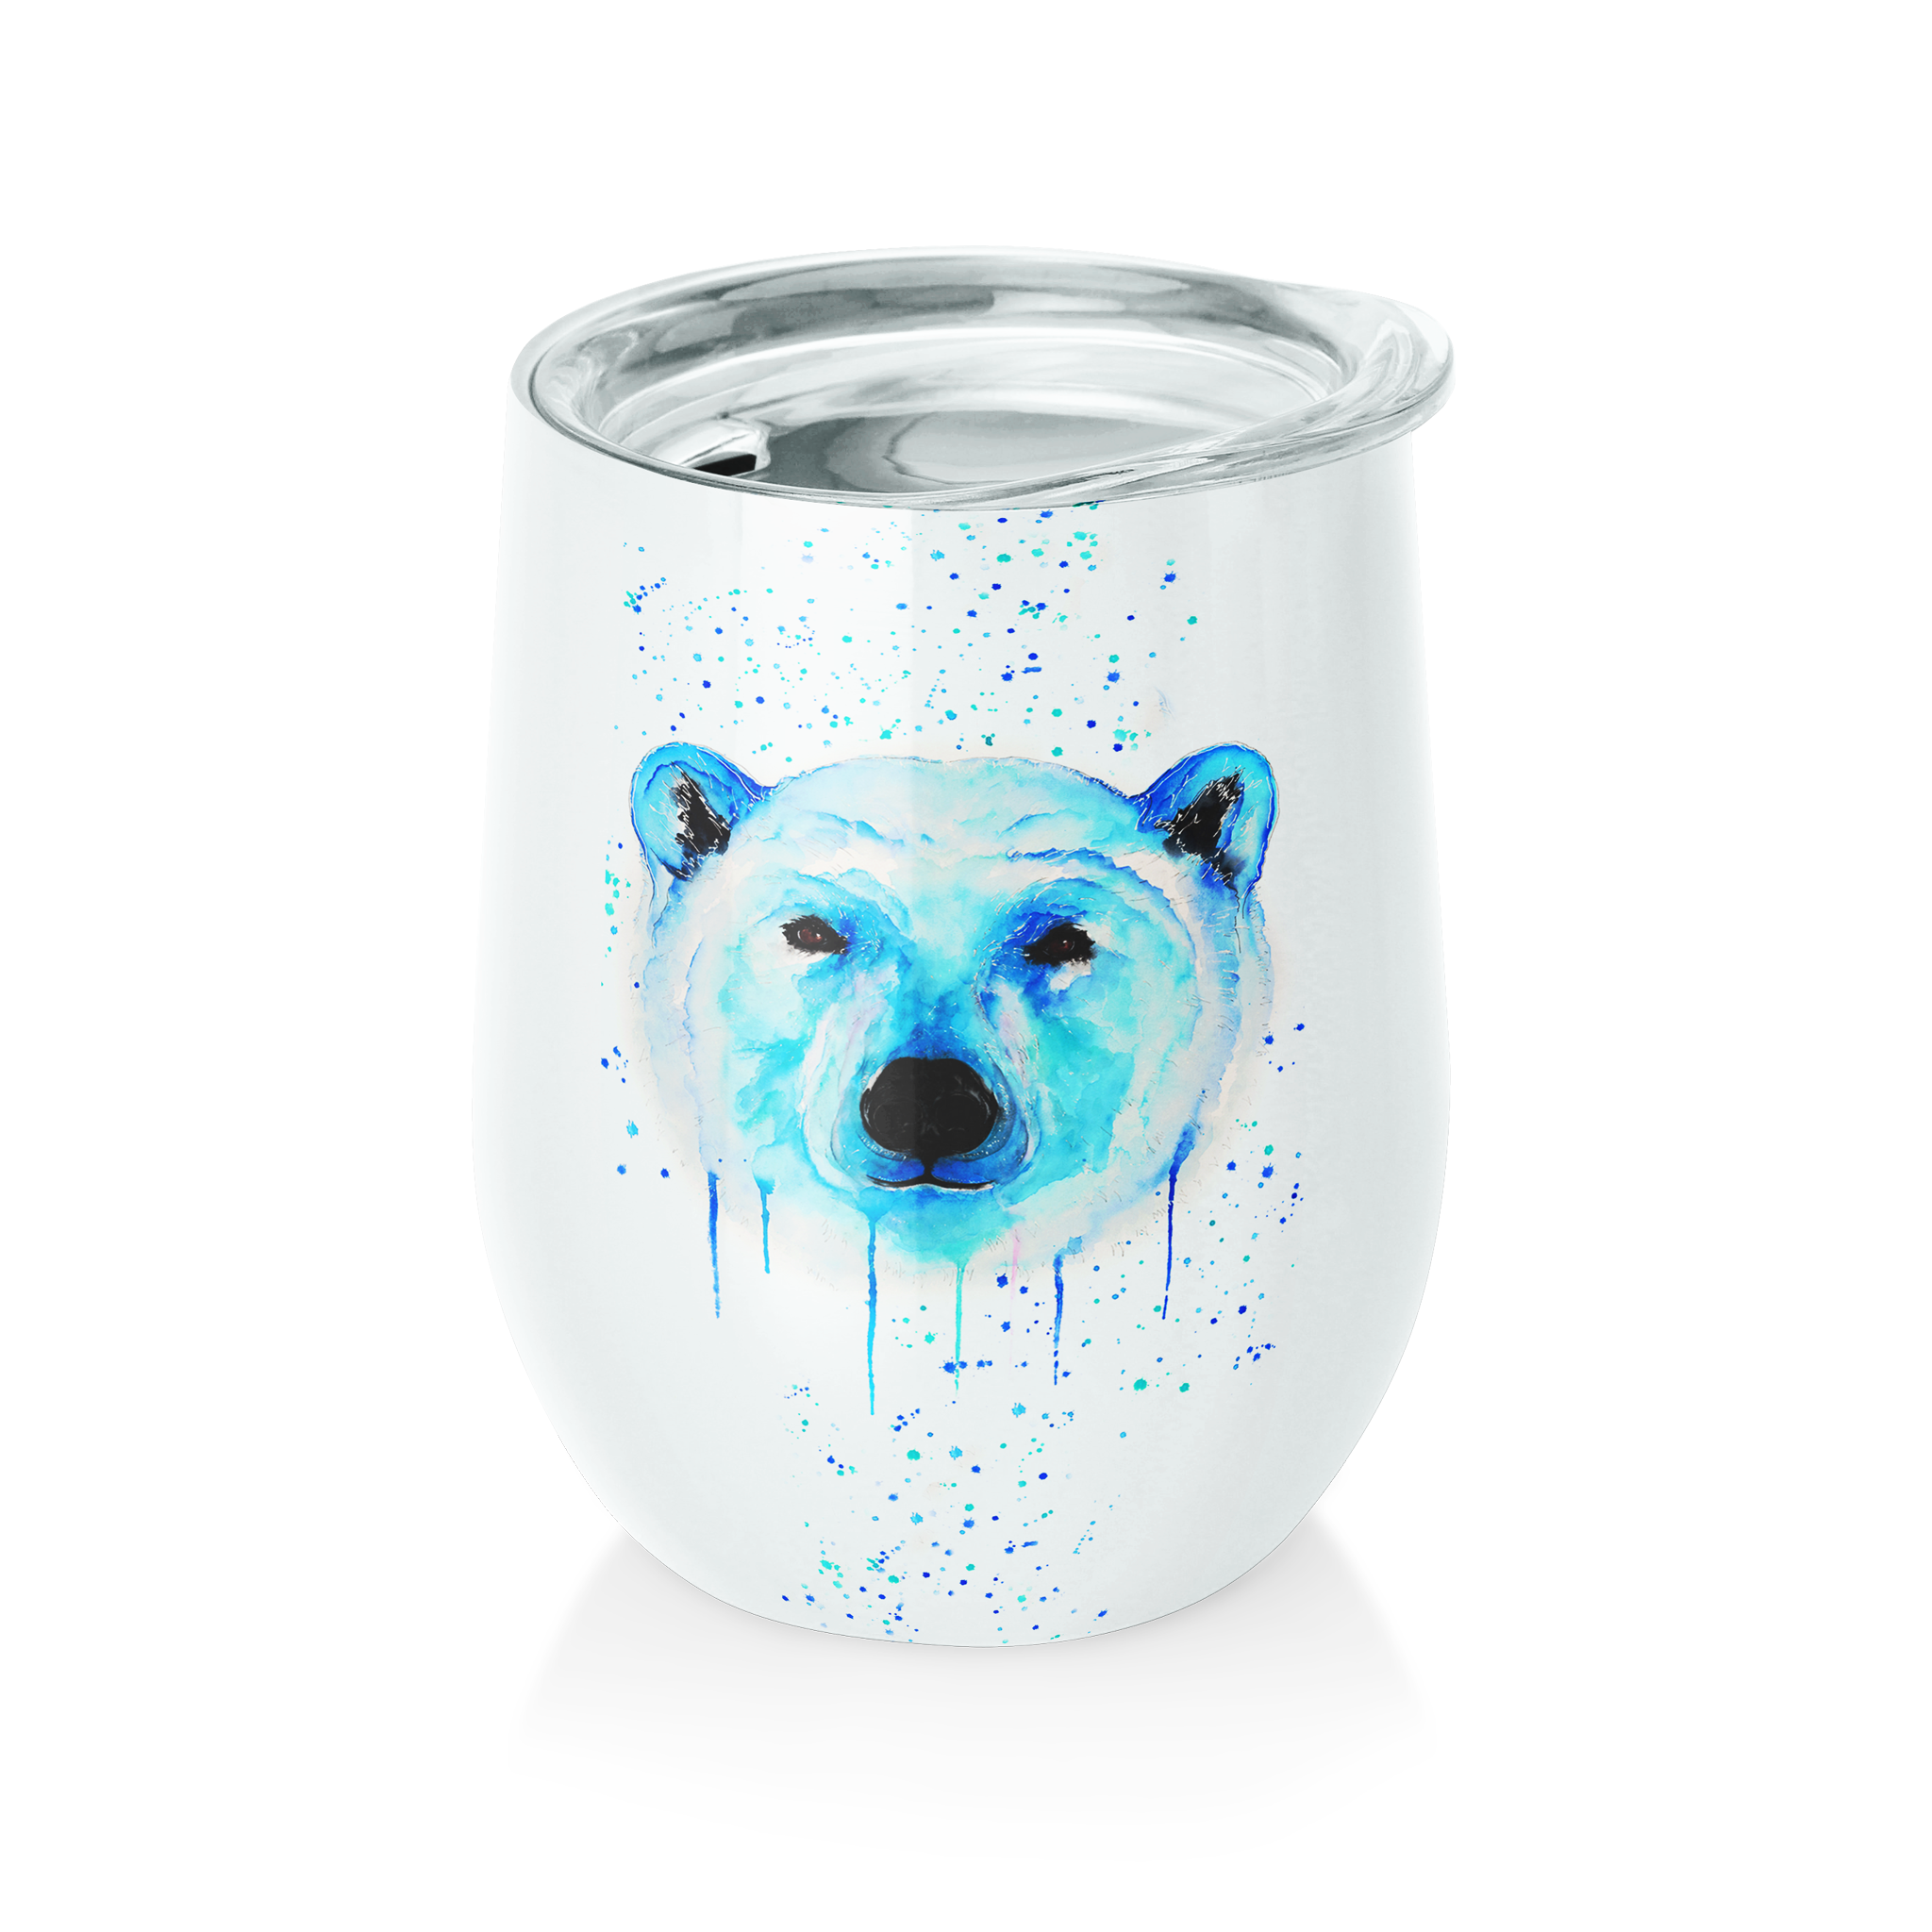 WWF Polar Bear